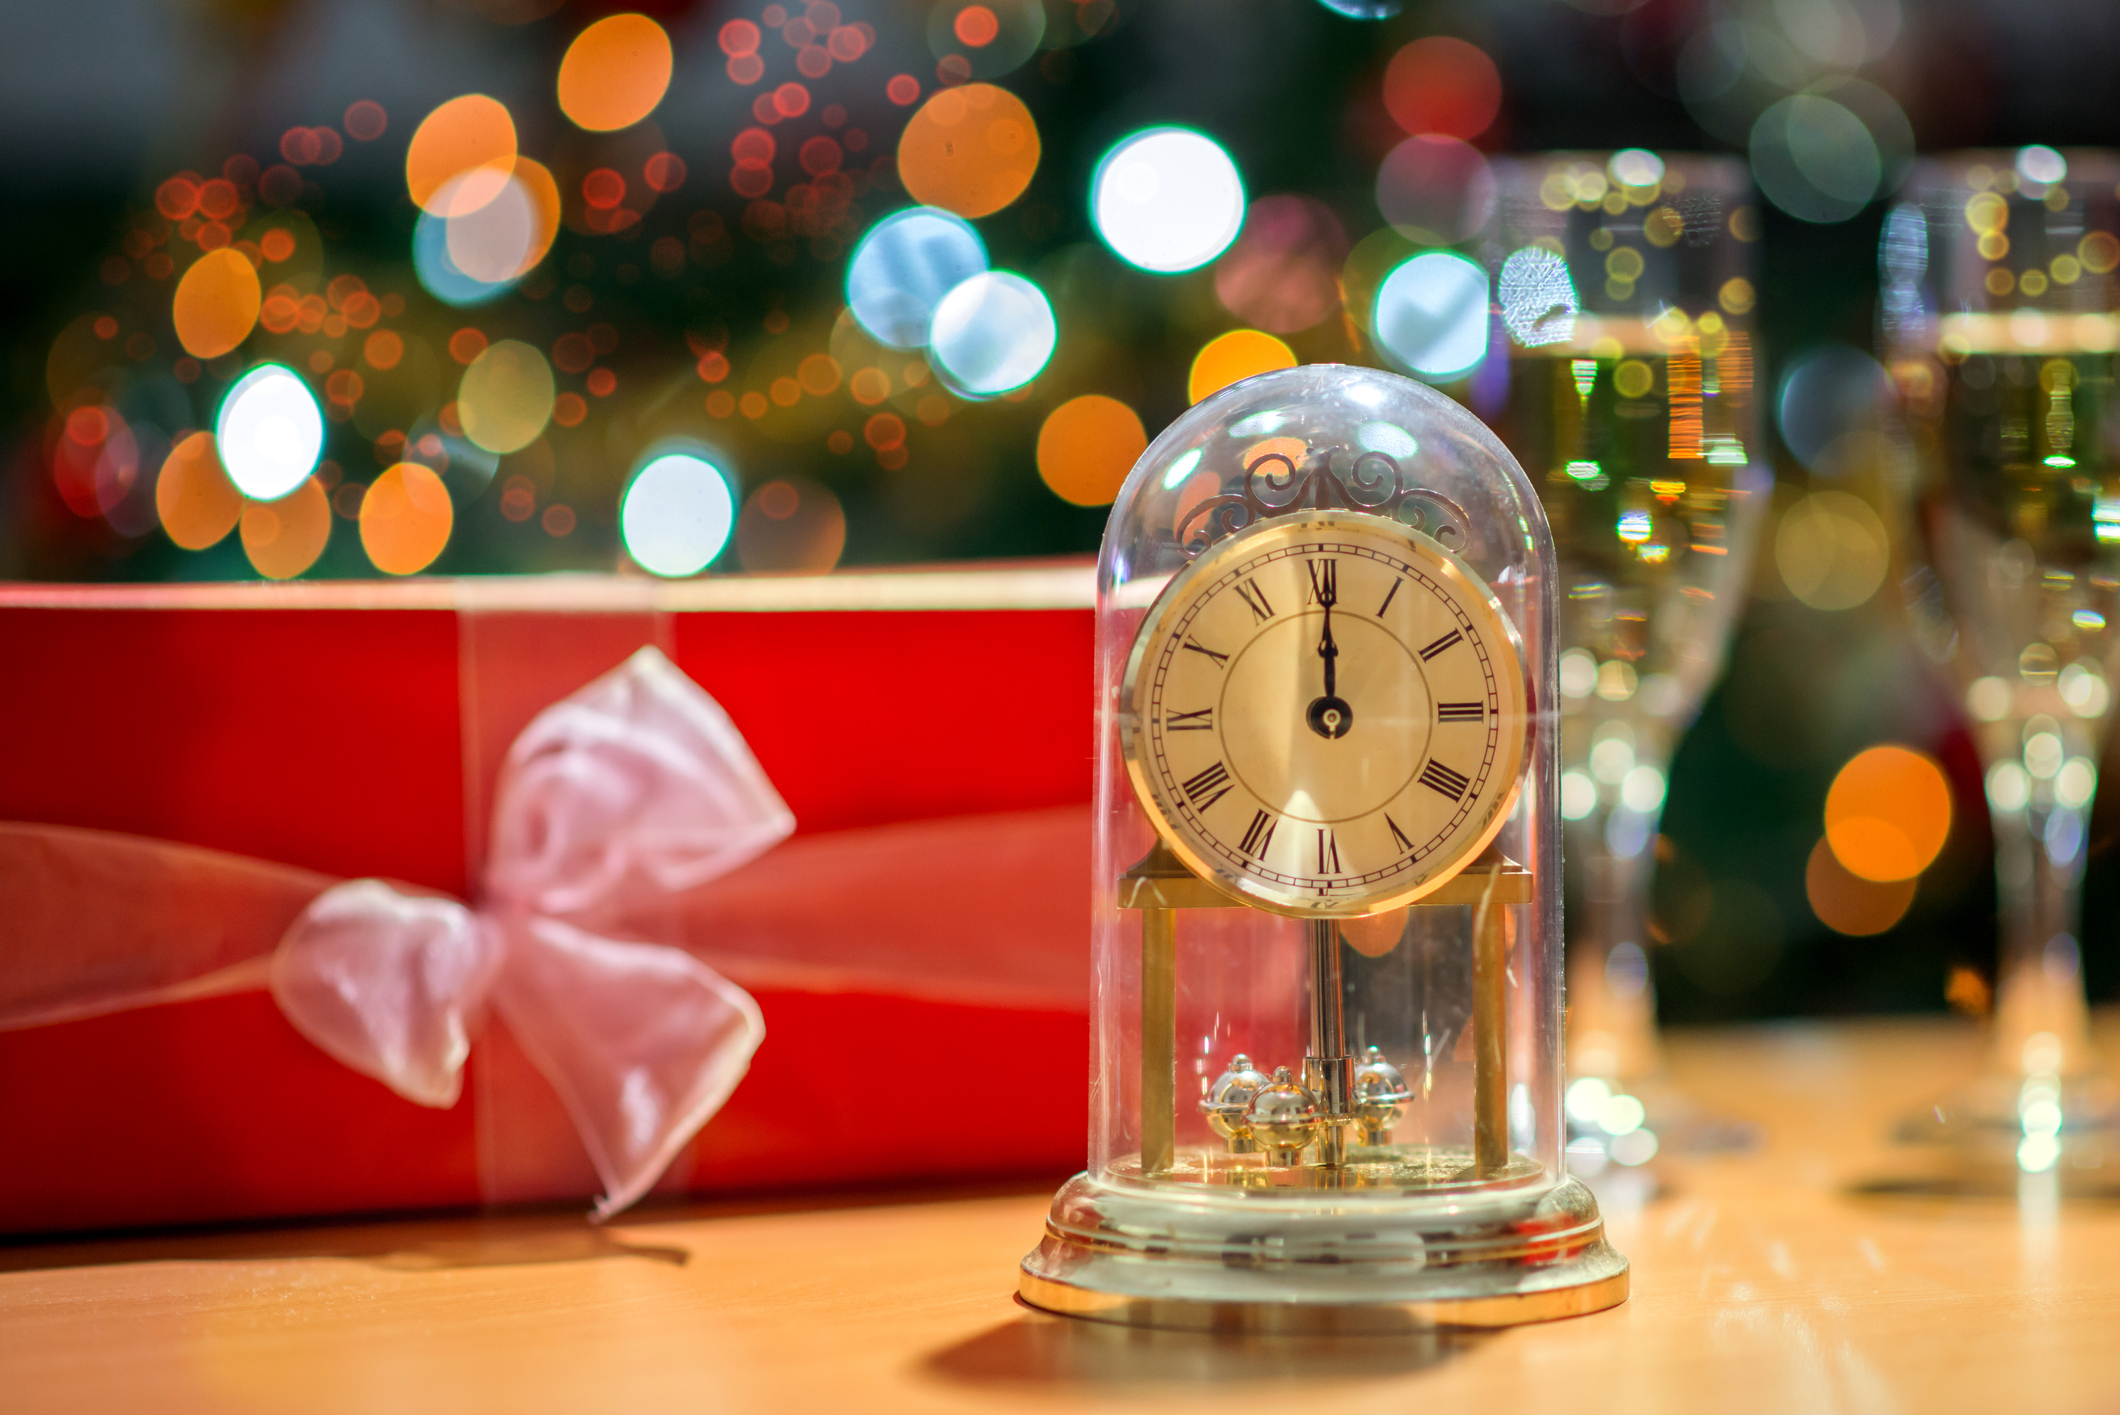 置き時計 おしゃれ 北欧 小さい アンティーク かわいい プレゼント ギフト 引越し祝い 結婚祝い 退職祝い 高級感 「ヵ月保証」 置き時計